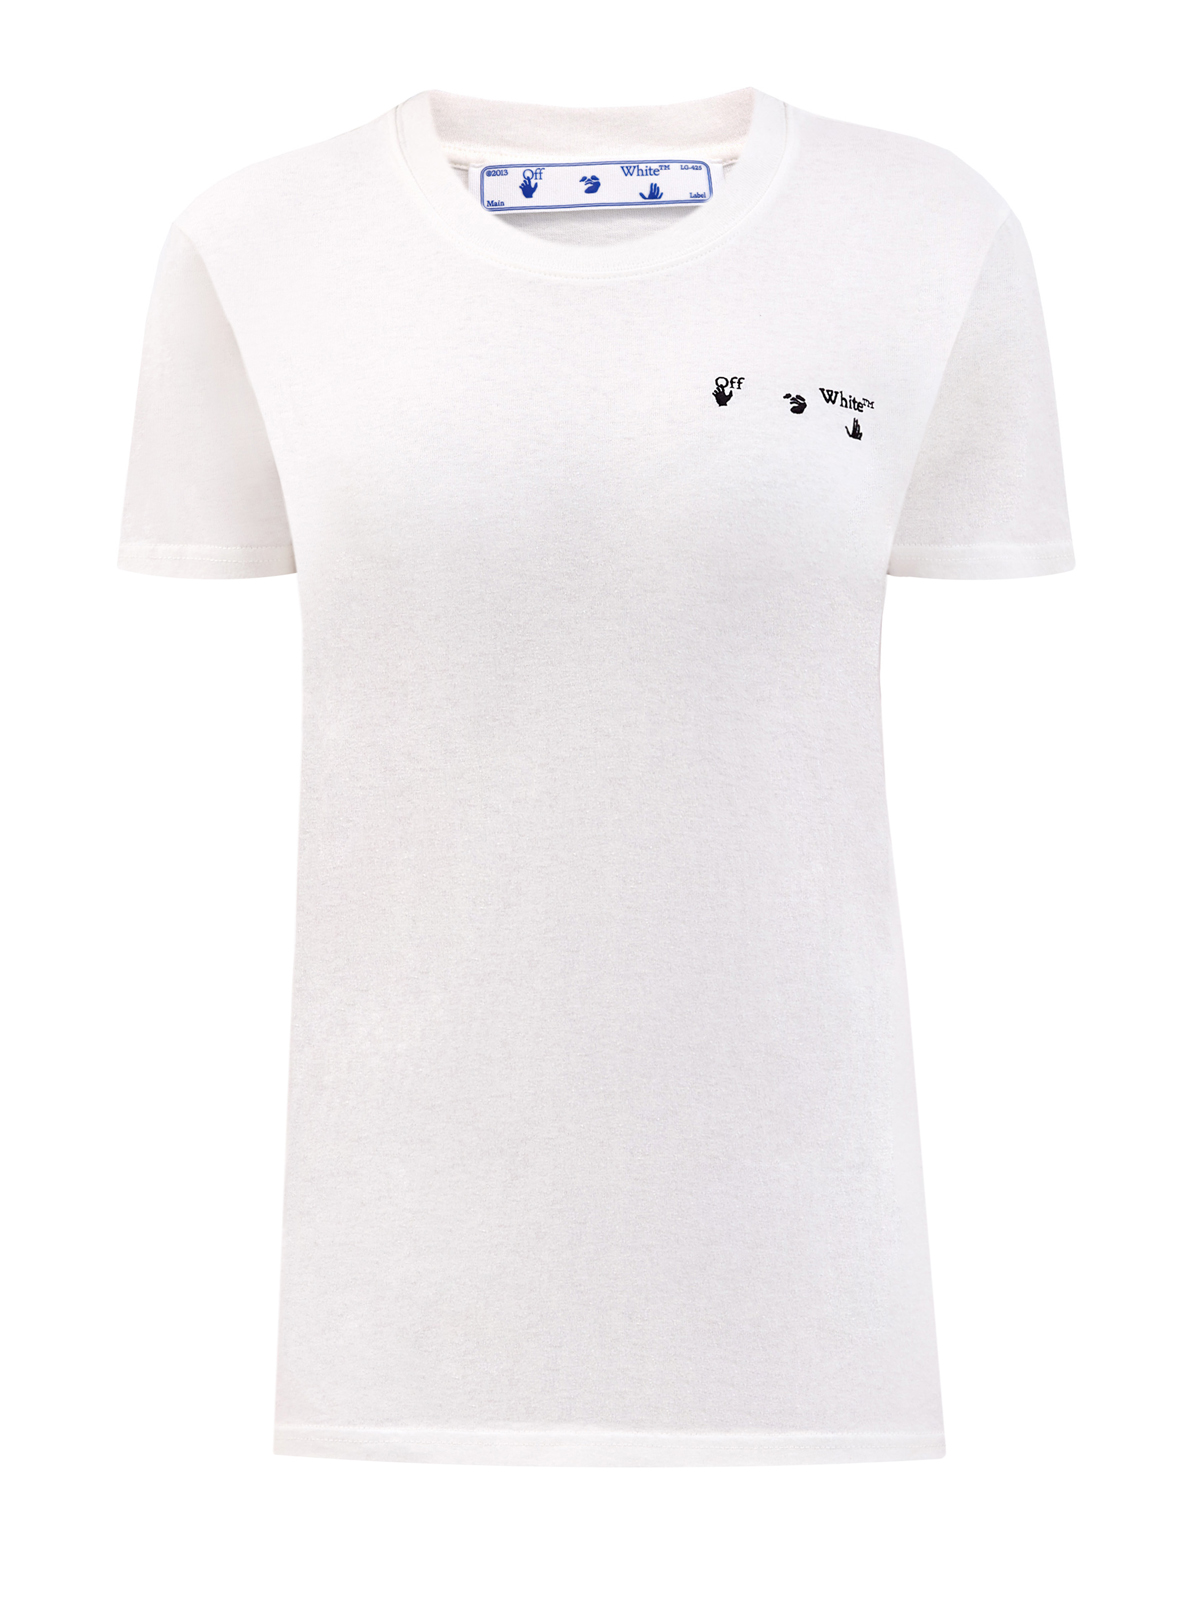 Хлопковая футболка с макро-принтом Arrows OFF-WHITE, цвет белый, размер S - фото 1